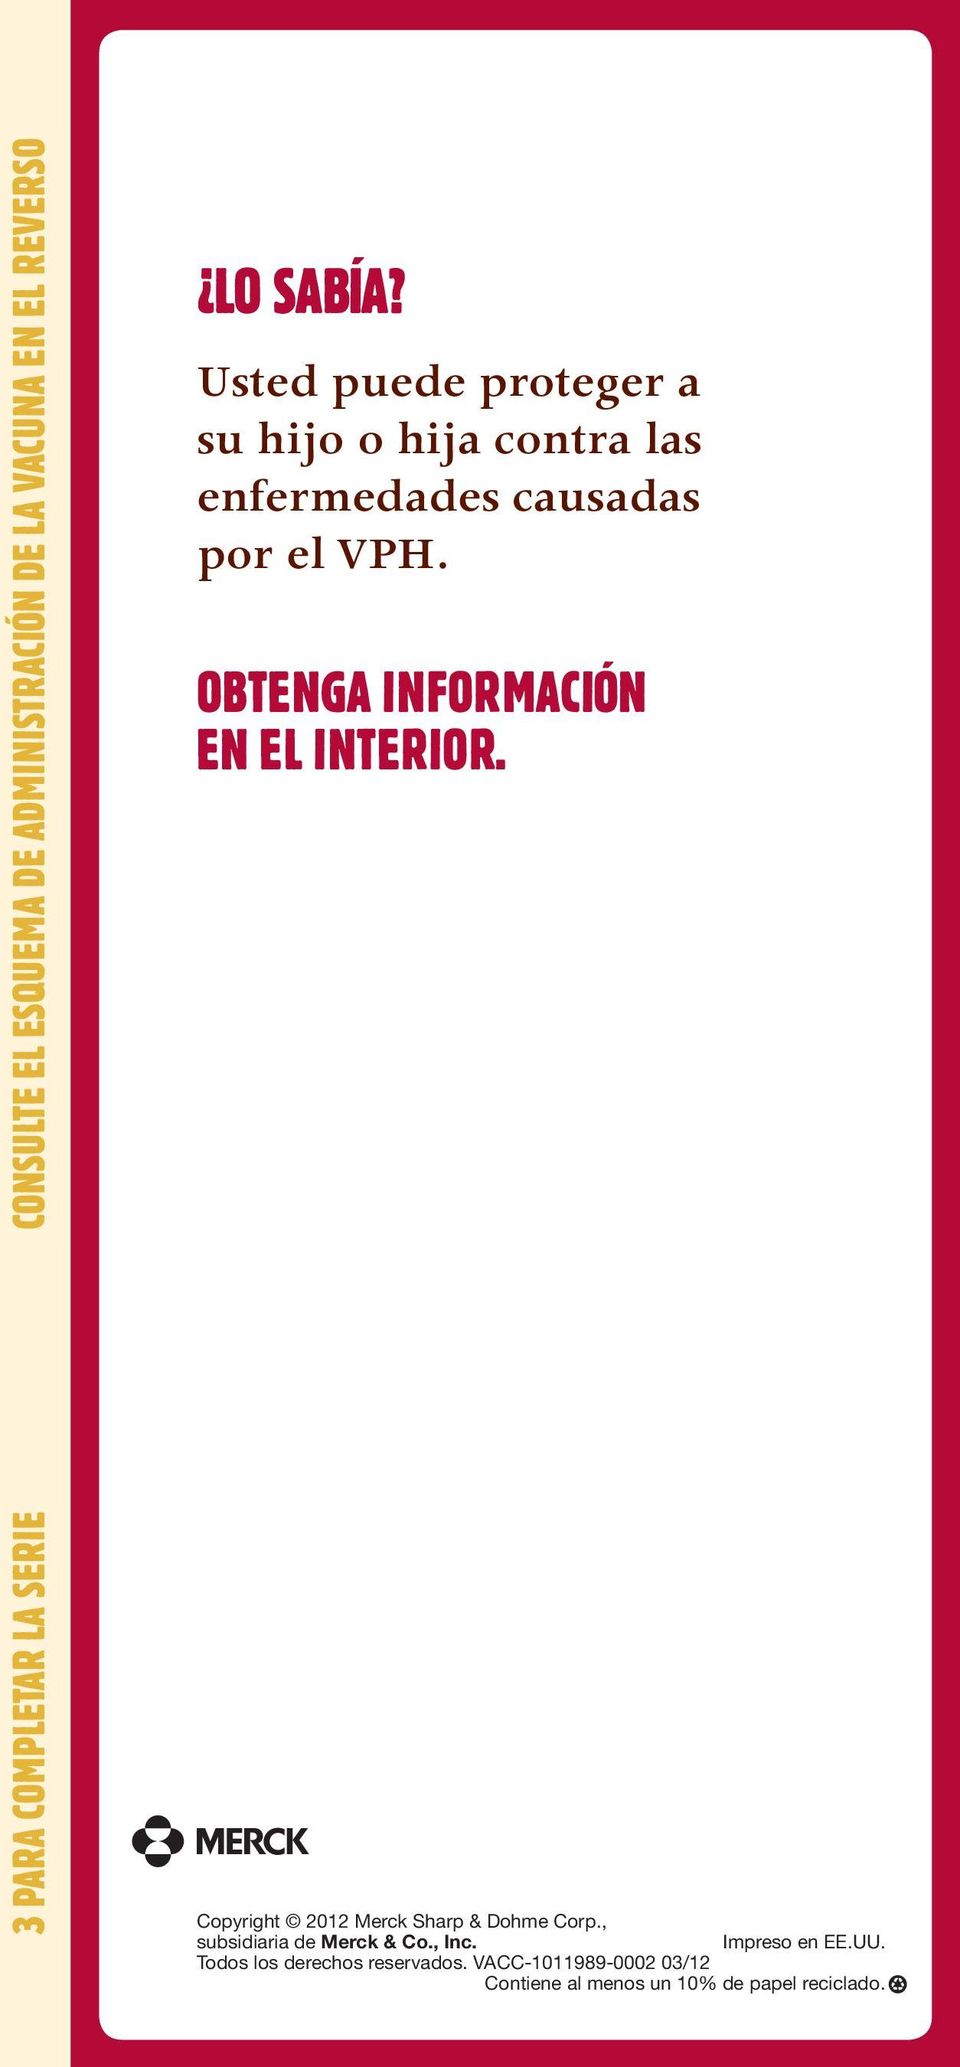 OBTENGA INFORMACIÓN EN EL INTERIOR. Copyright 2012 Merck Sharp & Dohme Corp.